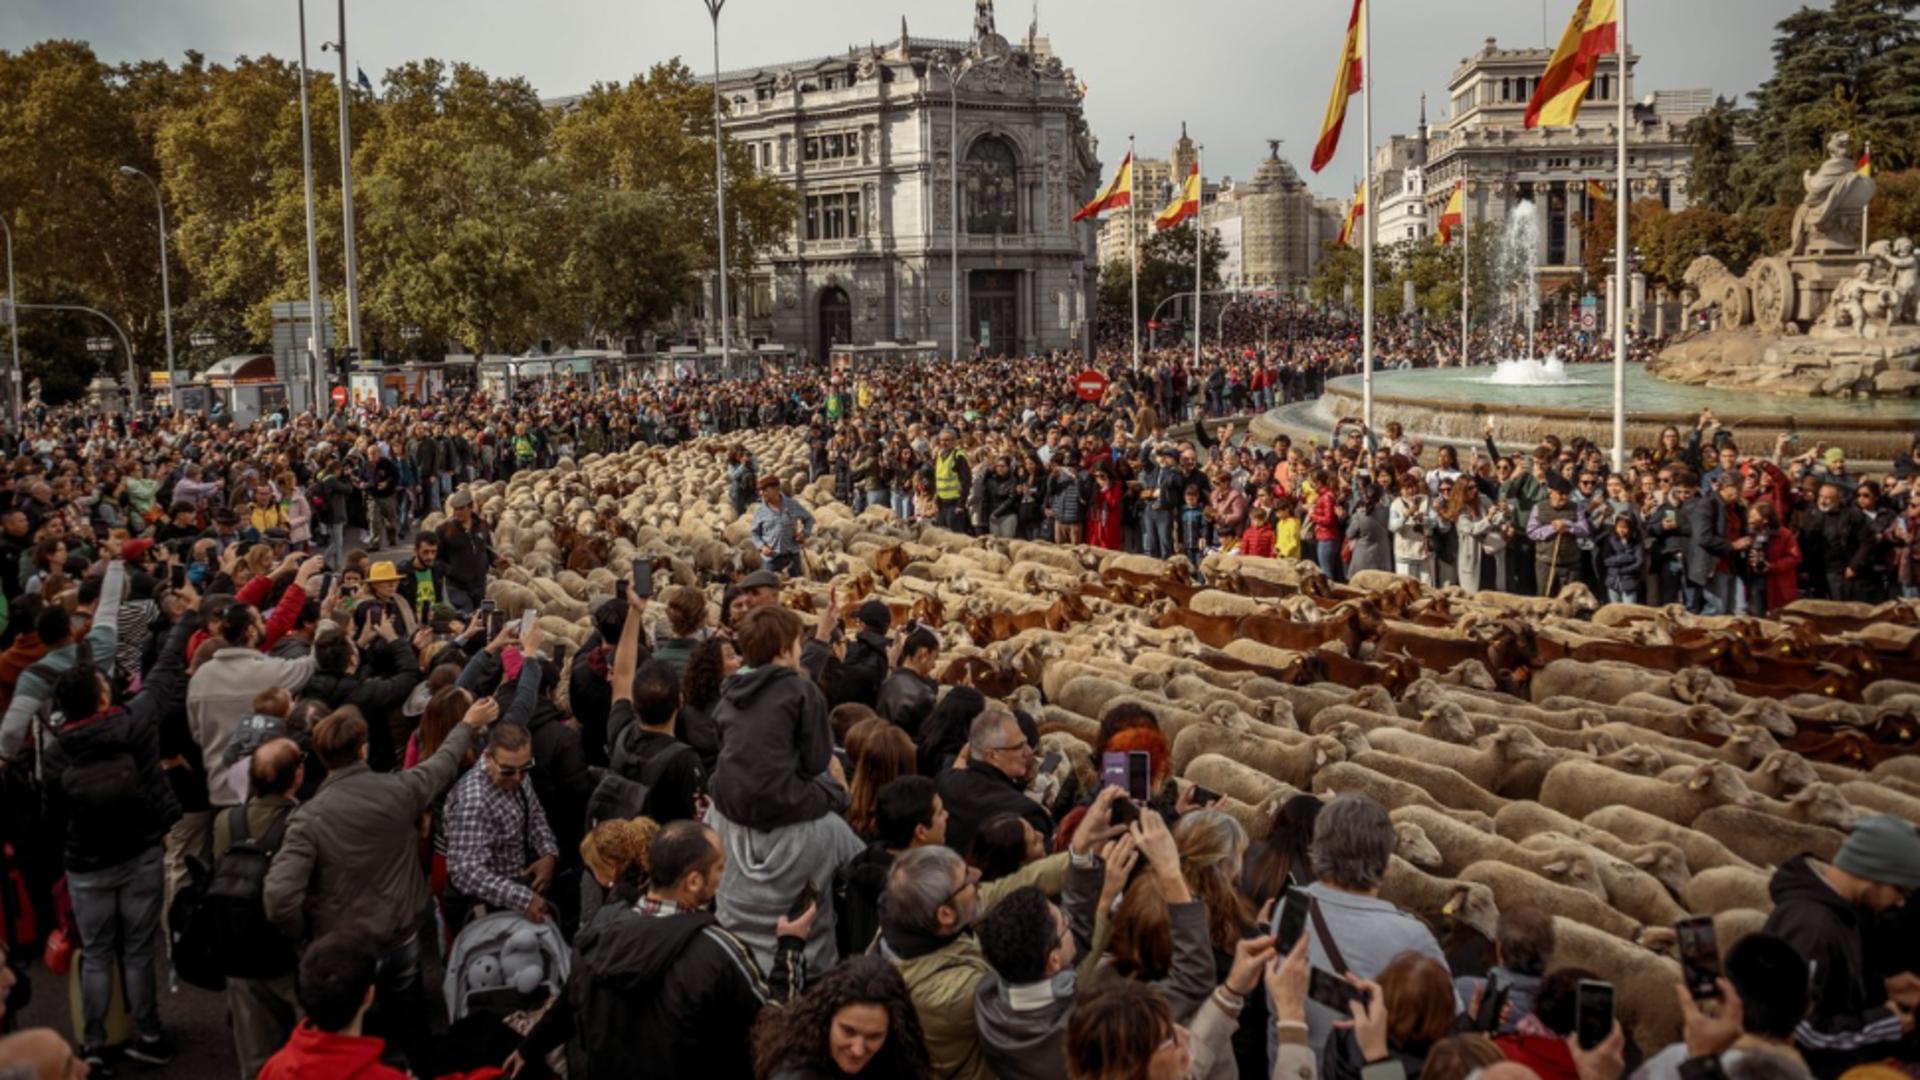 Străzile din Madrid, luate cu asalt de peste 1000 de oi! Vechile rute de transhumanţă, accesibile într-un eveniment inedit  – Zeci de curioși